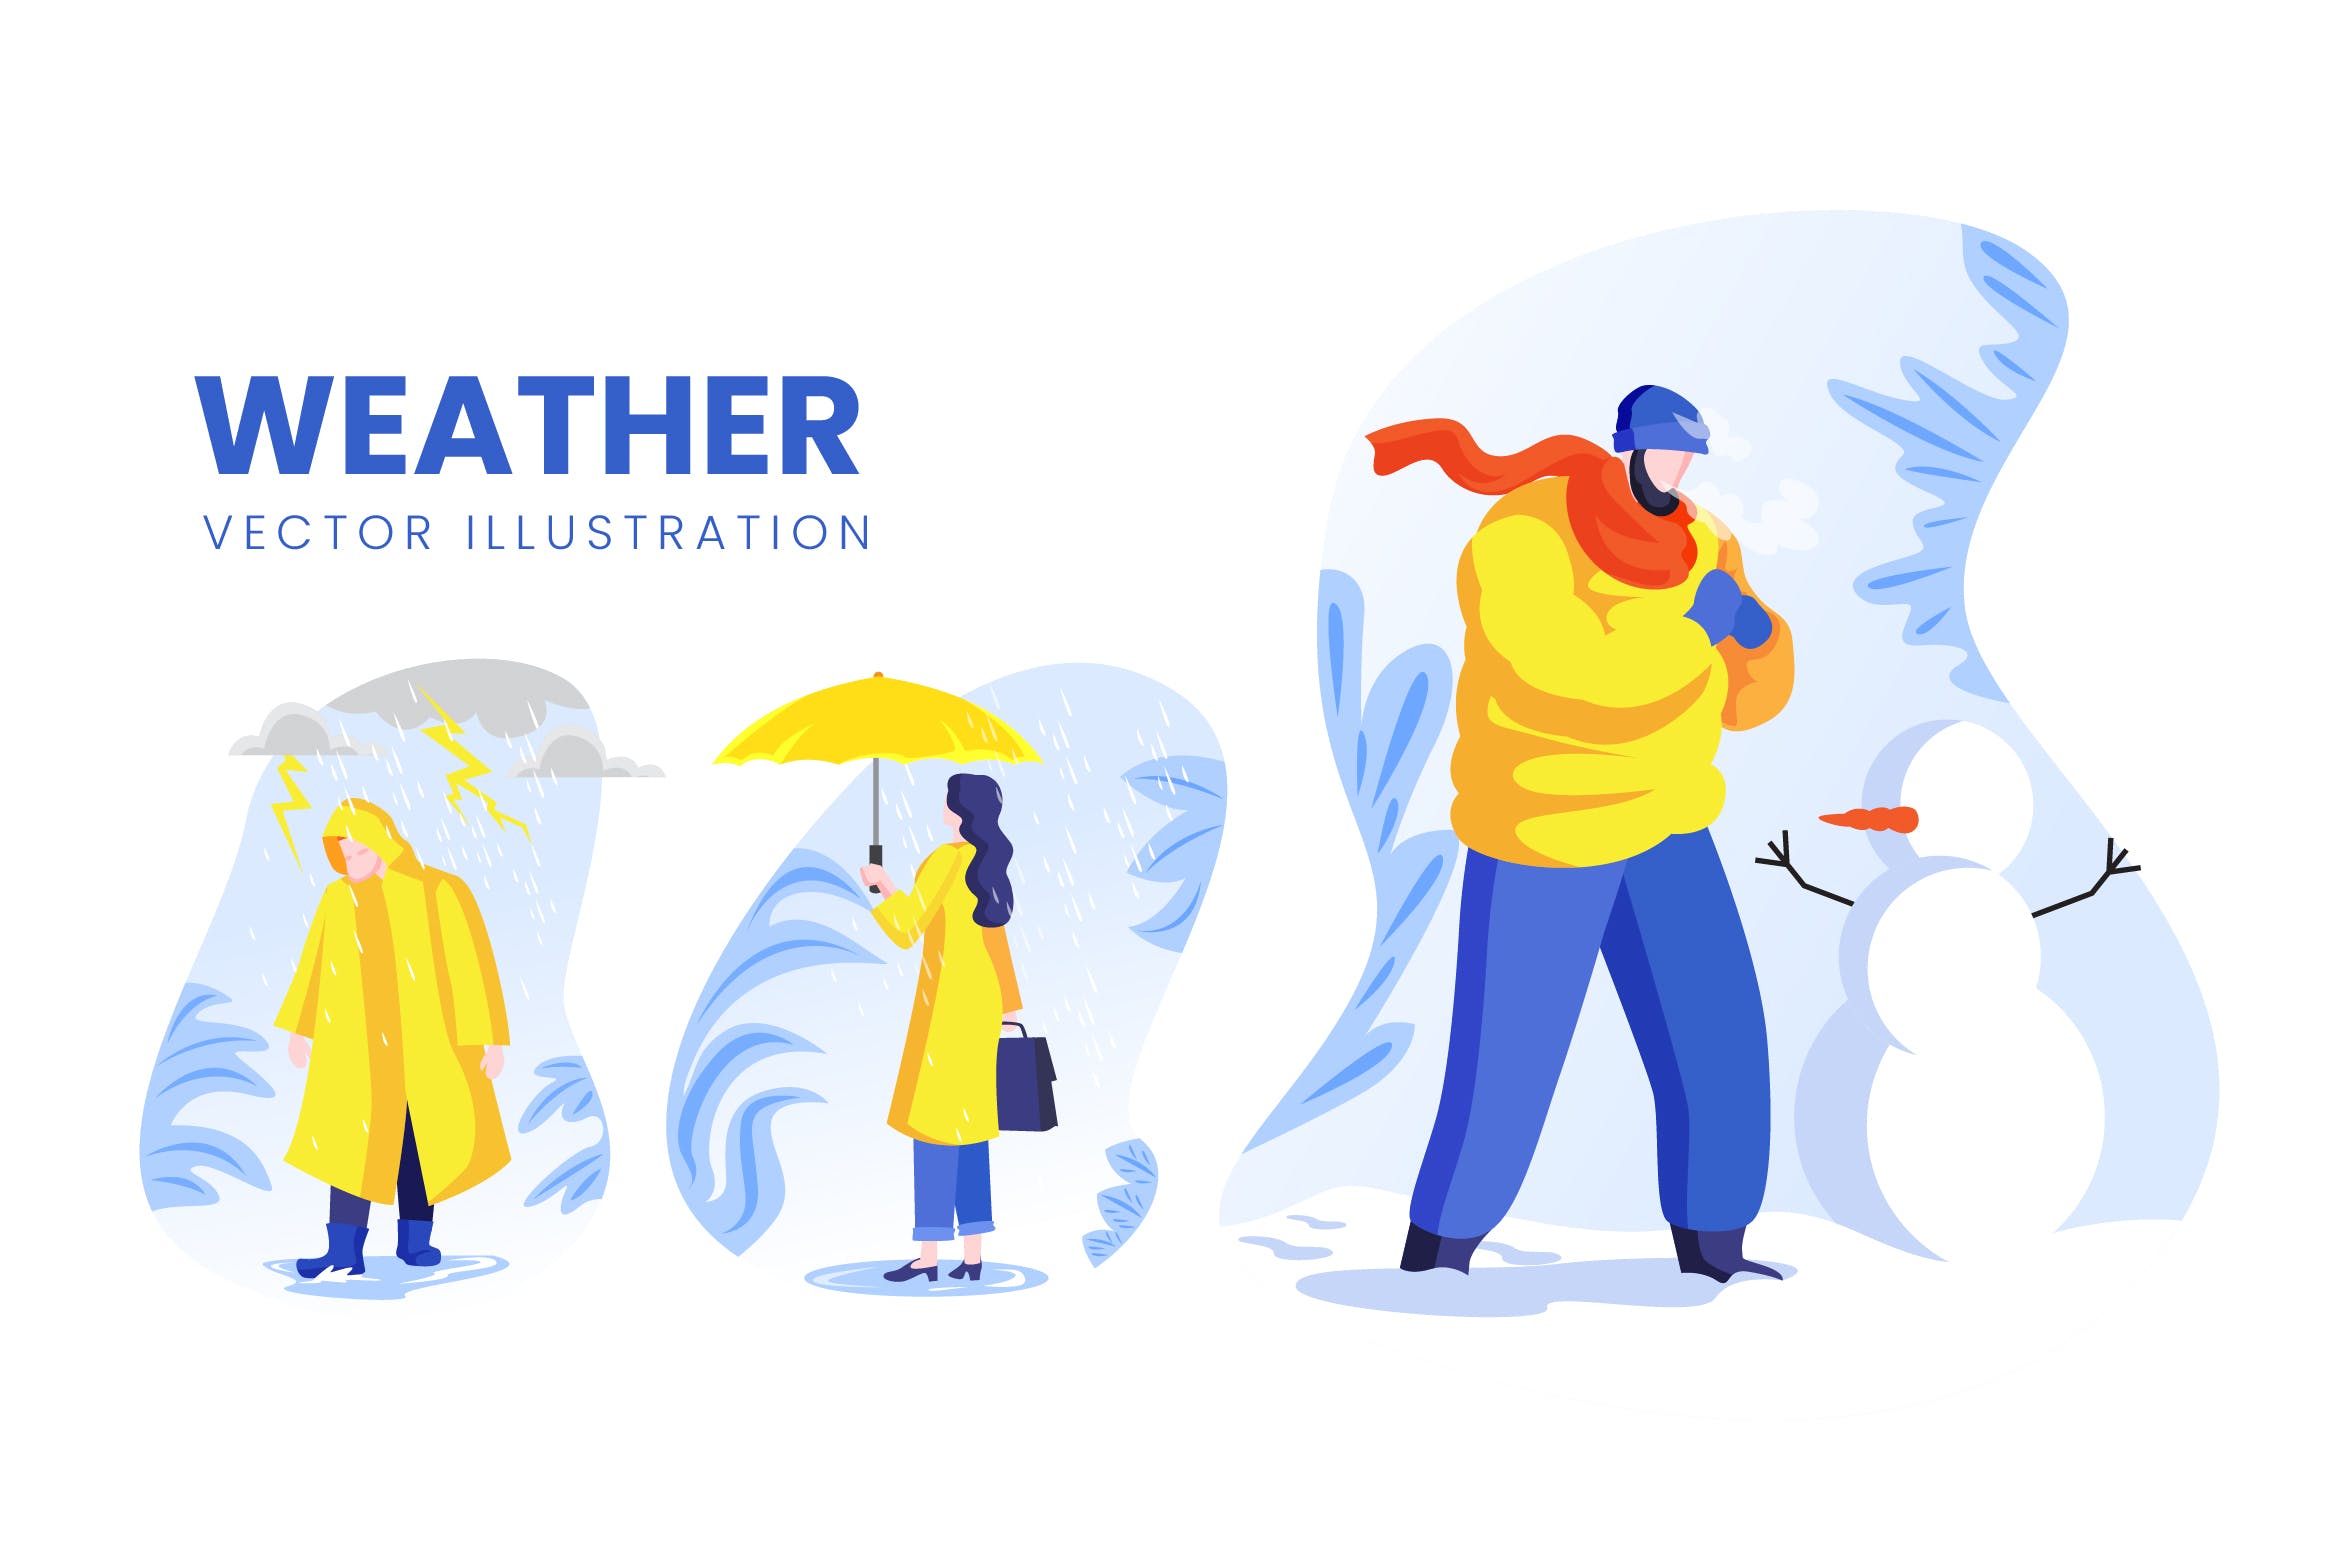 天气预报主题人物形象非凡图库精选手绘插画矢量素材 Weather Condition Vector Character Set插图